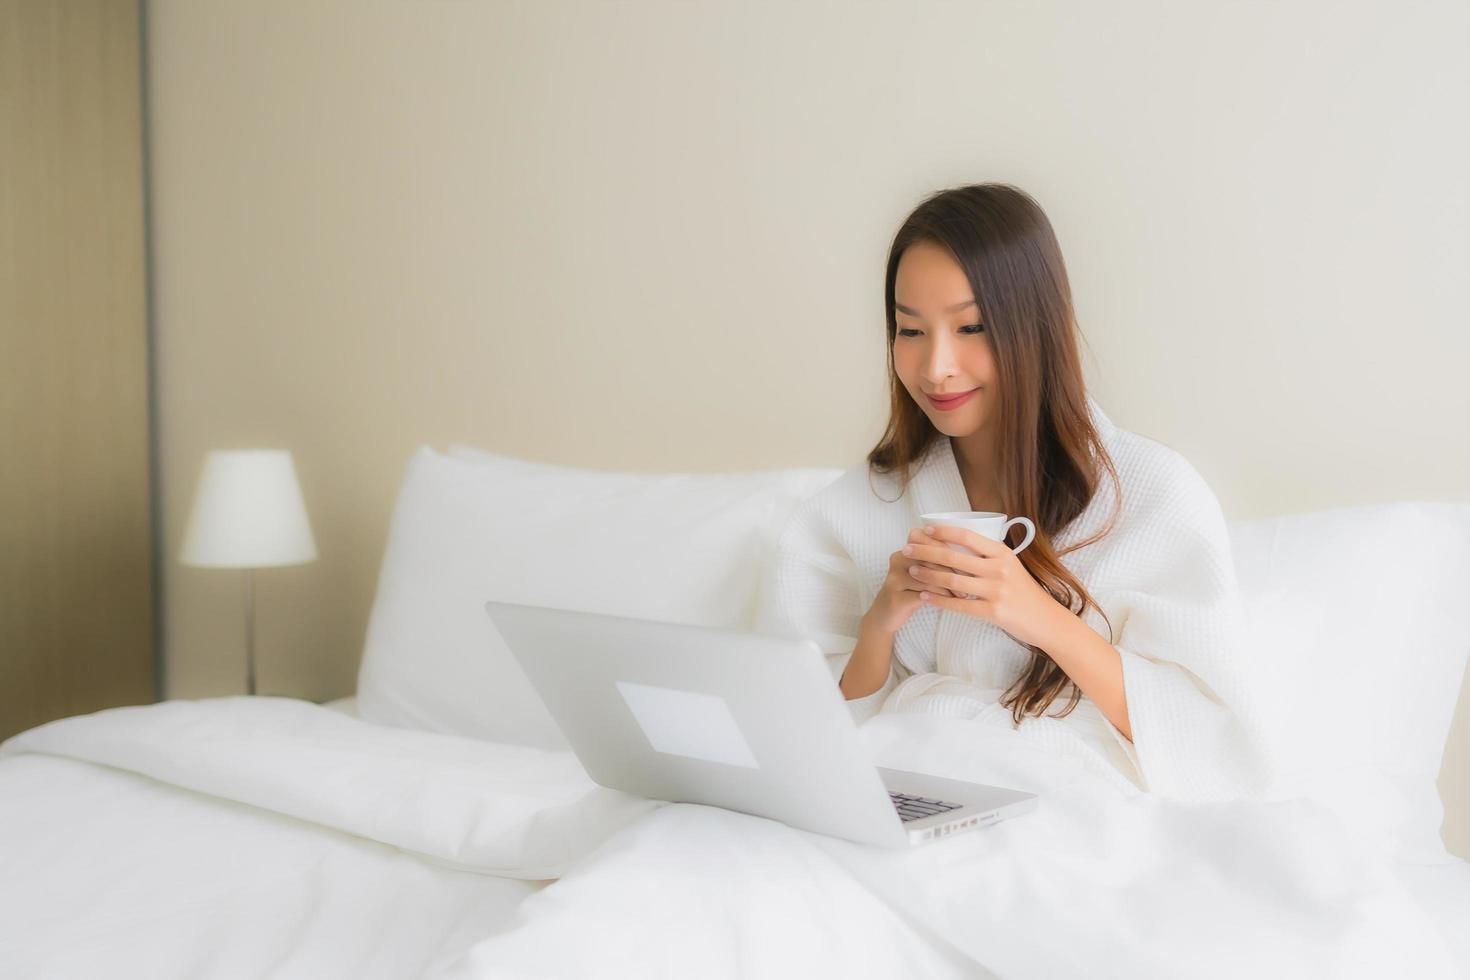 Retrato de hermosas mujeres asiáticas jóvenes con taza de café y computadora portátil en la cama foto